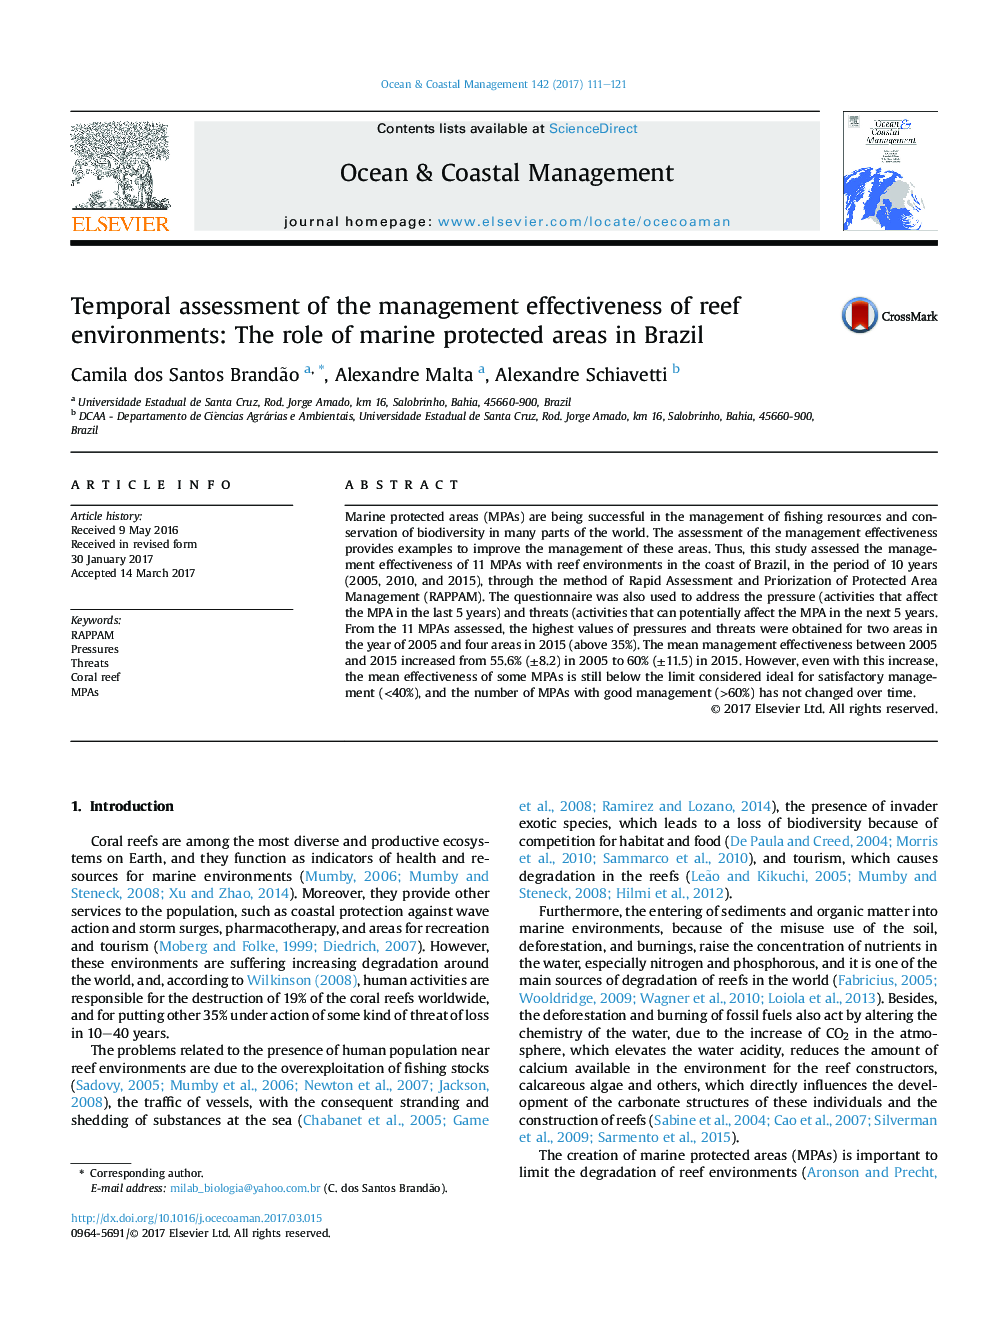 ارزیابی موقتی از اثرات مدیریت محیط های مرجانی: نقش حوزه های حفاظت شده دریایی در برزیل 